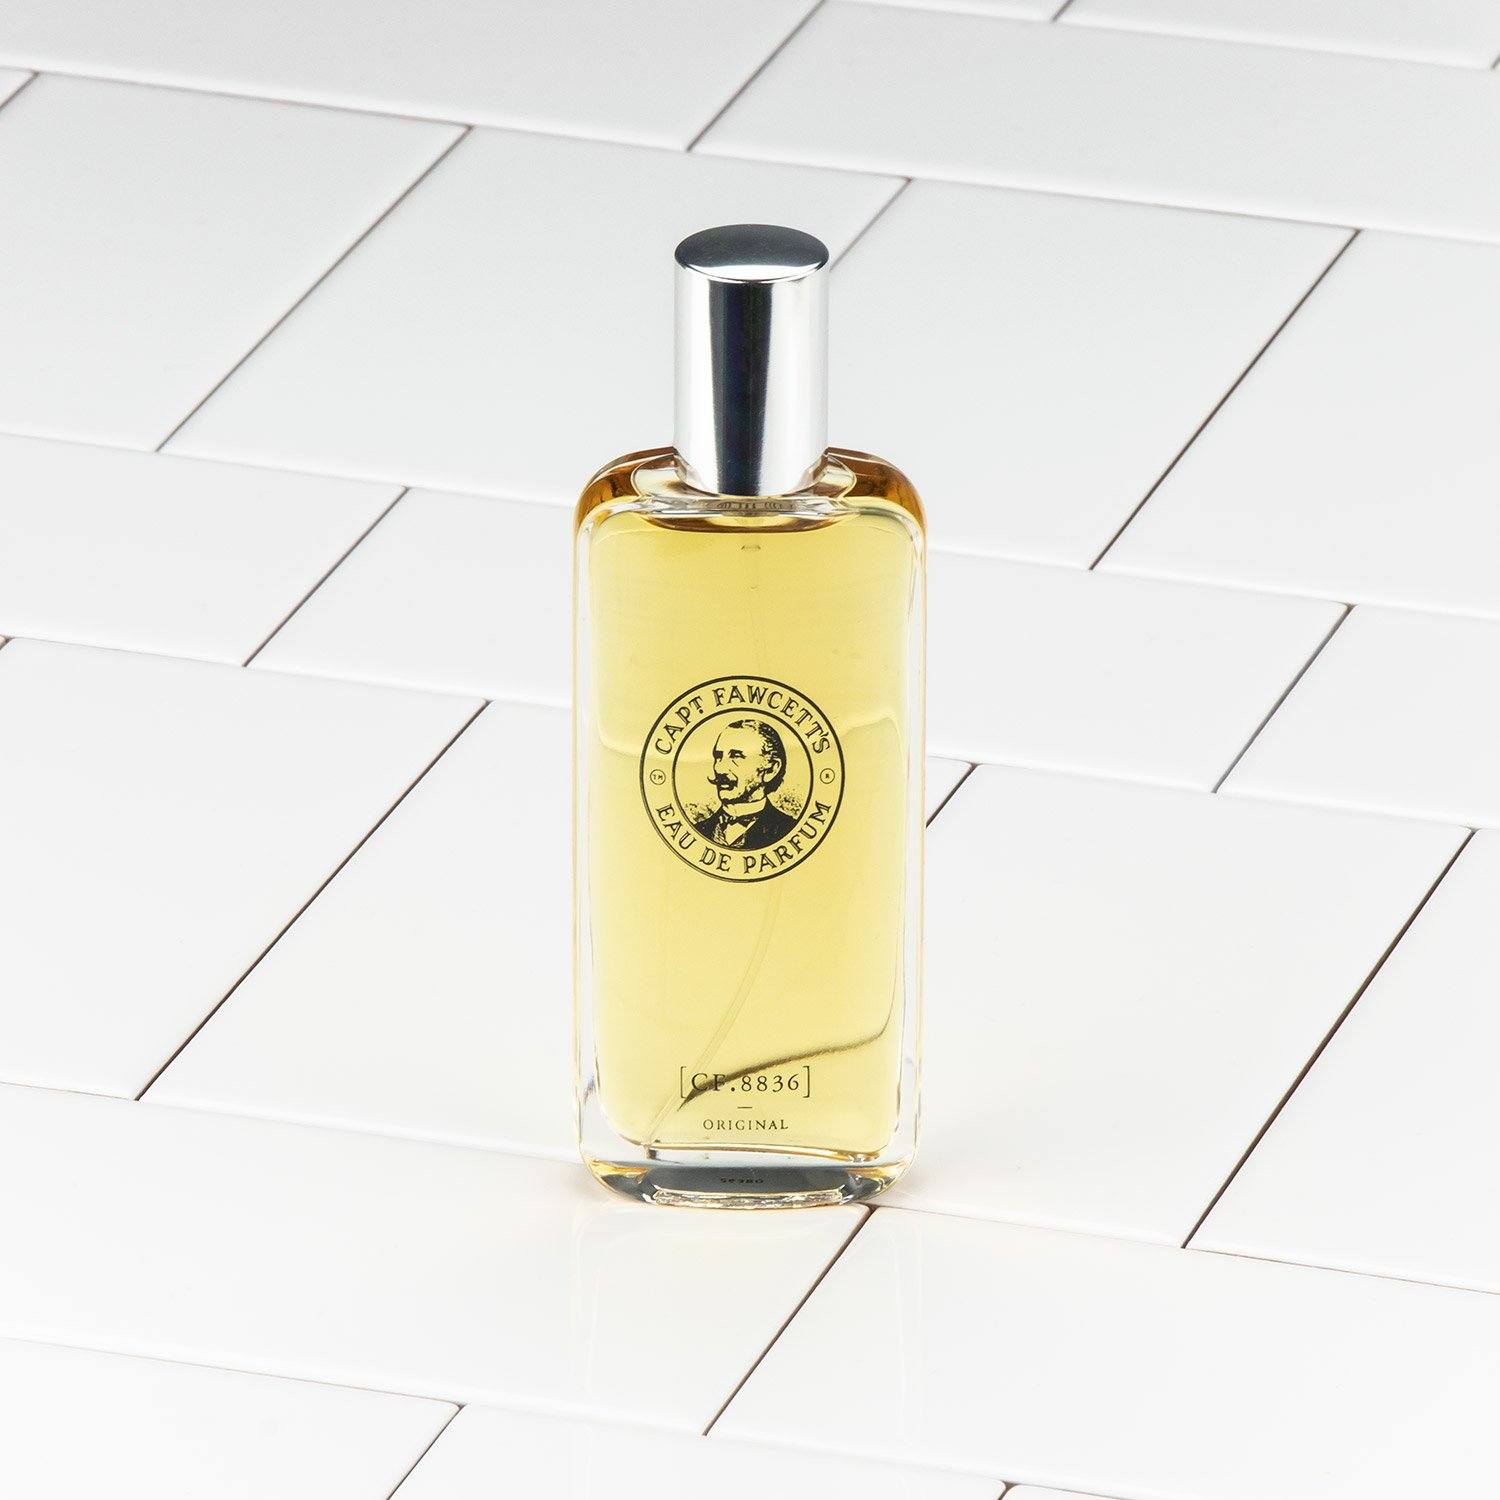 Captain Fawcett's Original Eau De Parfum 50ml